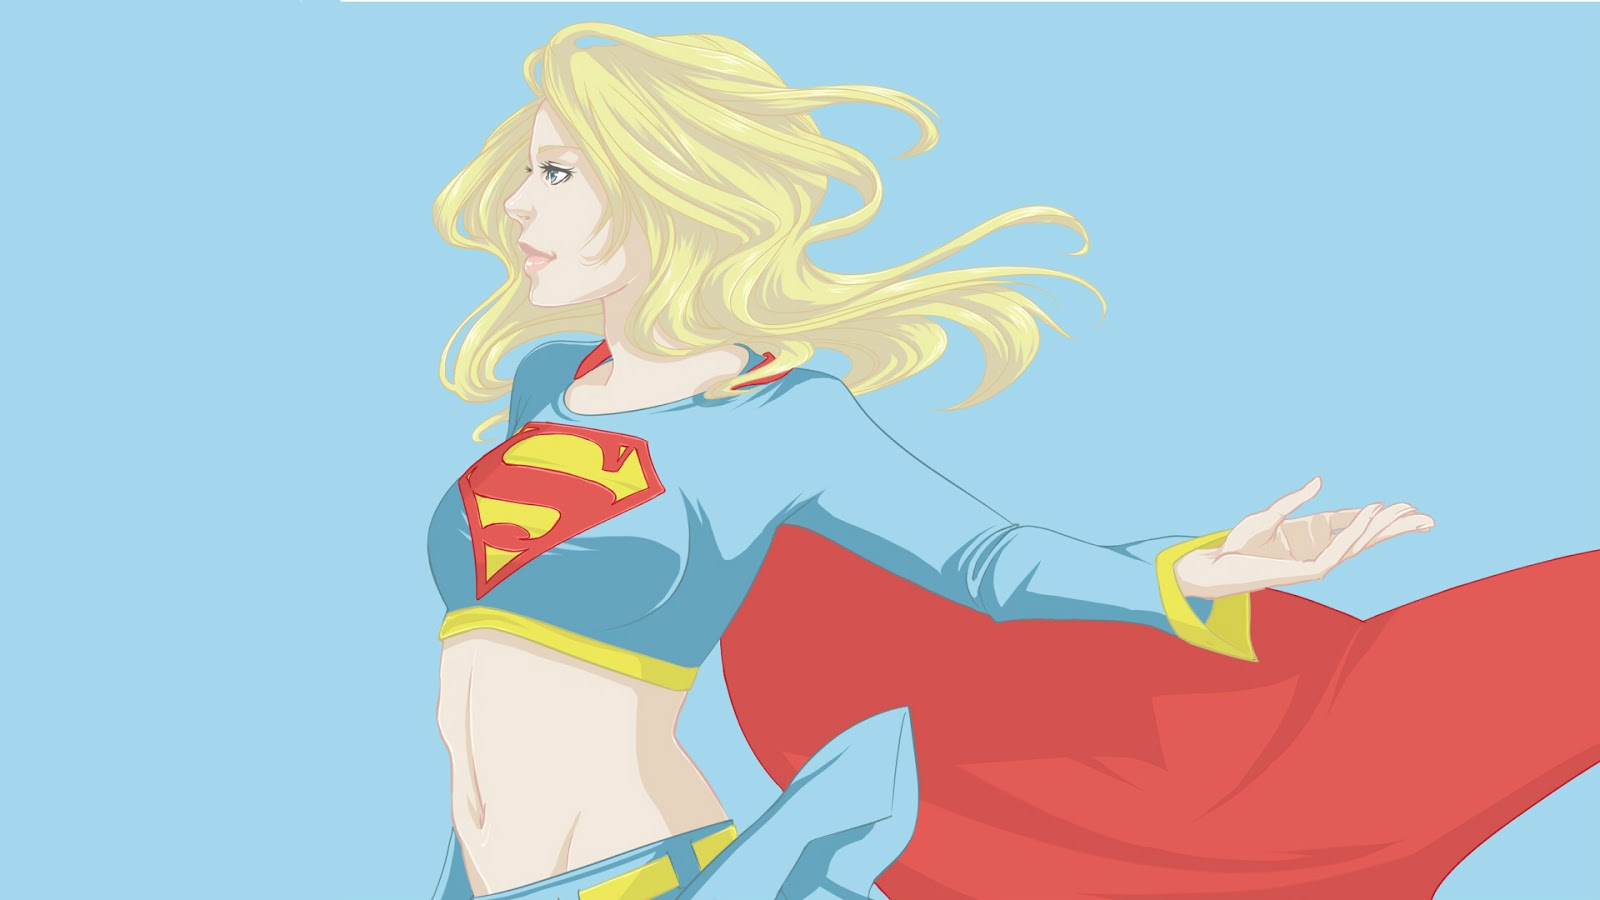 Supergirl Wallpaper Widescreen - WallpaperSafari.